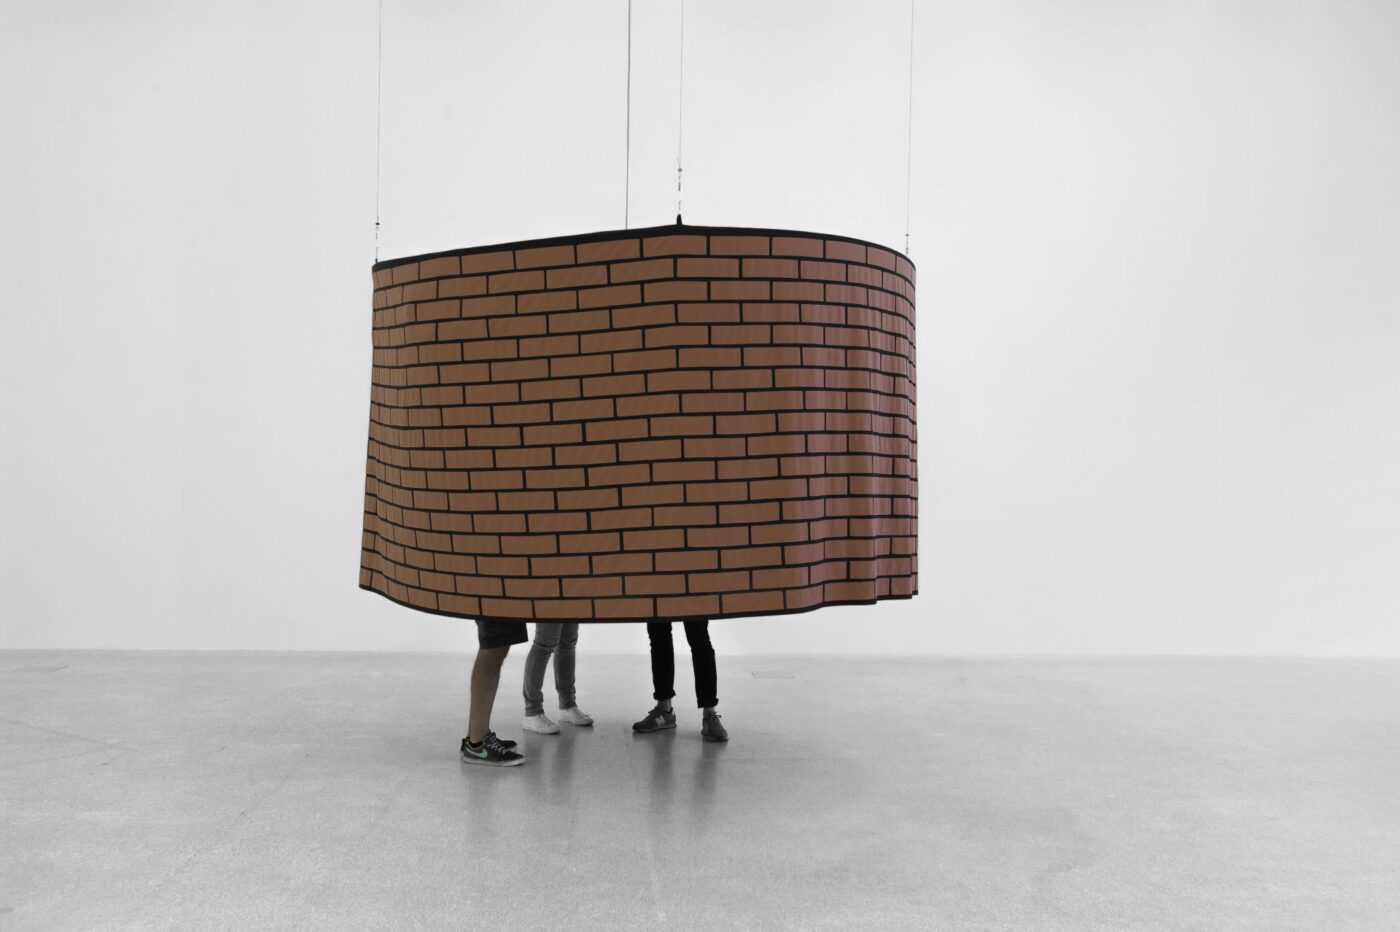 Unendliche Ausstellung: Judith Hopf, Flying Cinema Brickstone Tent, 2016, Fabric, ø 300 cm, Ausstellungsansicht UP, Museion Bozen, 2016